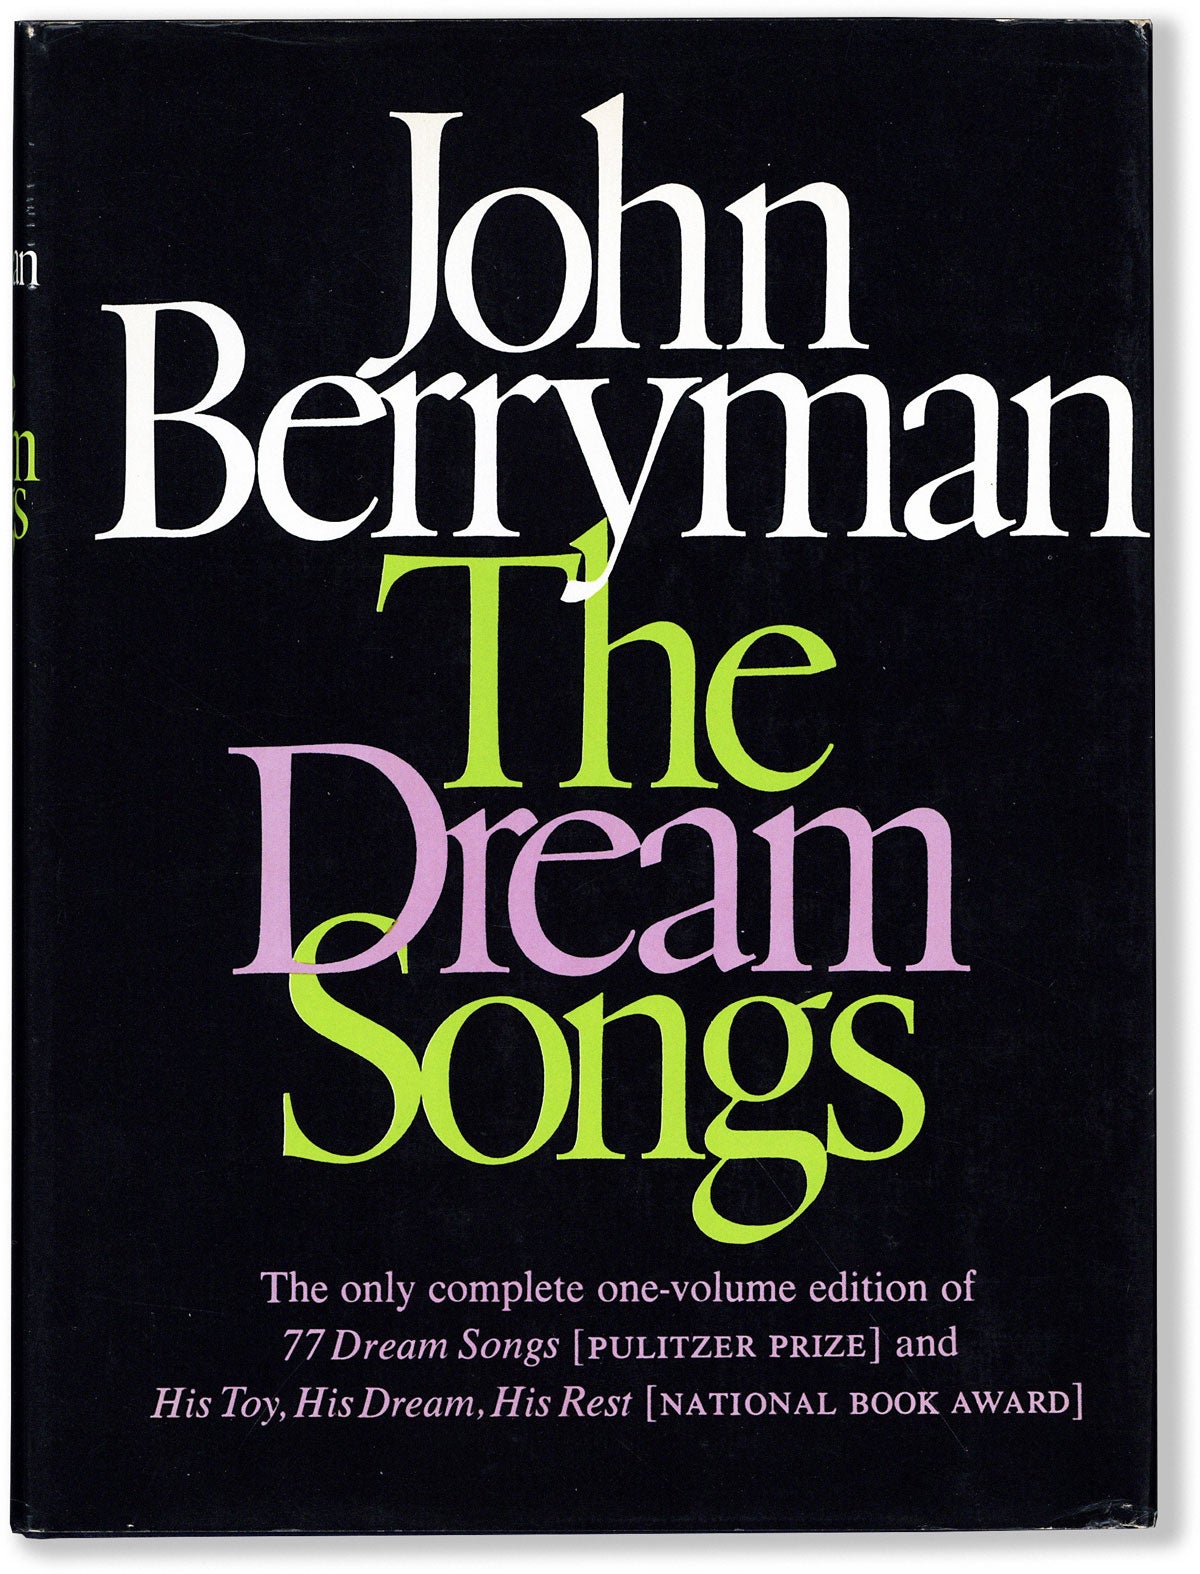 [Item #80750] THE DREAM SONGS. John BERRYMAN.